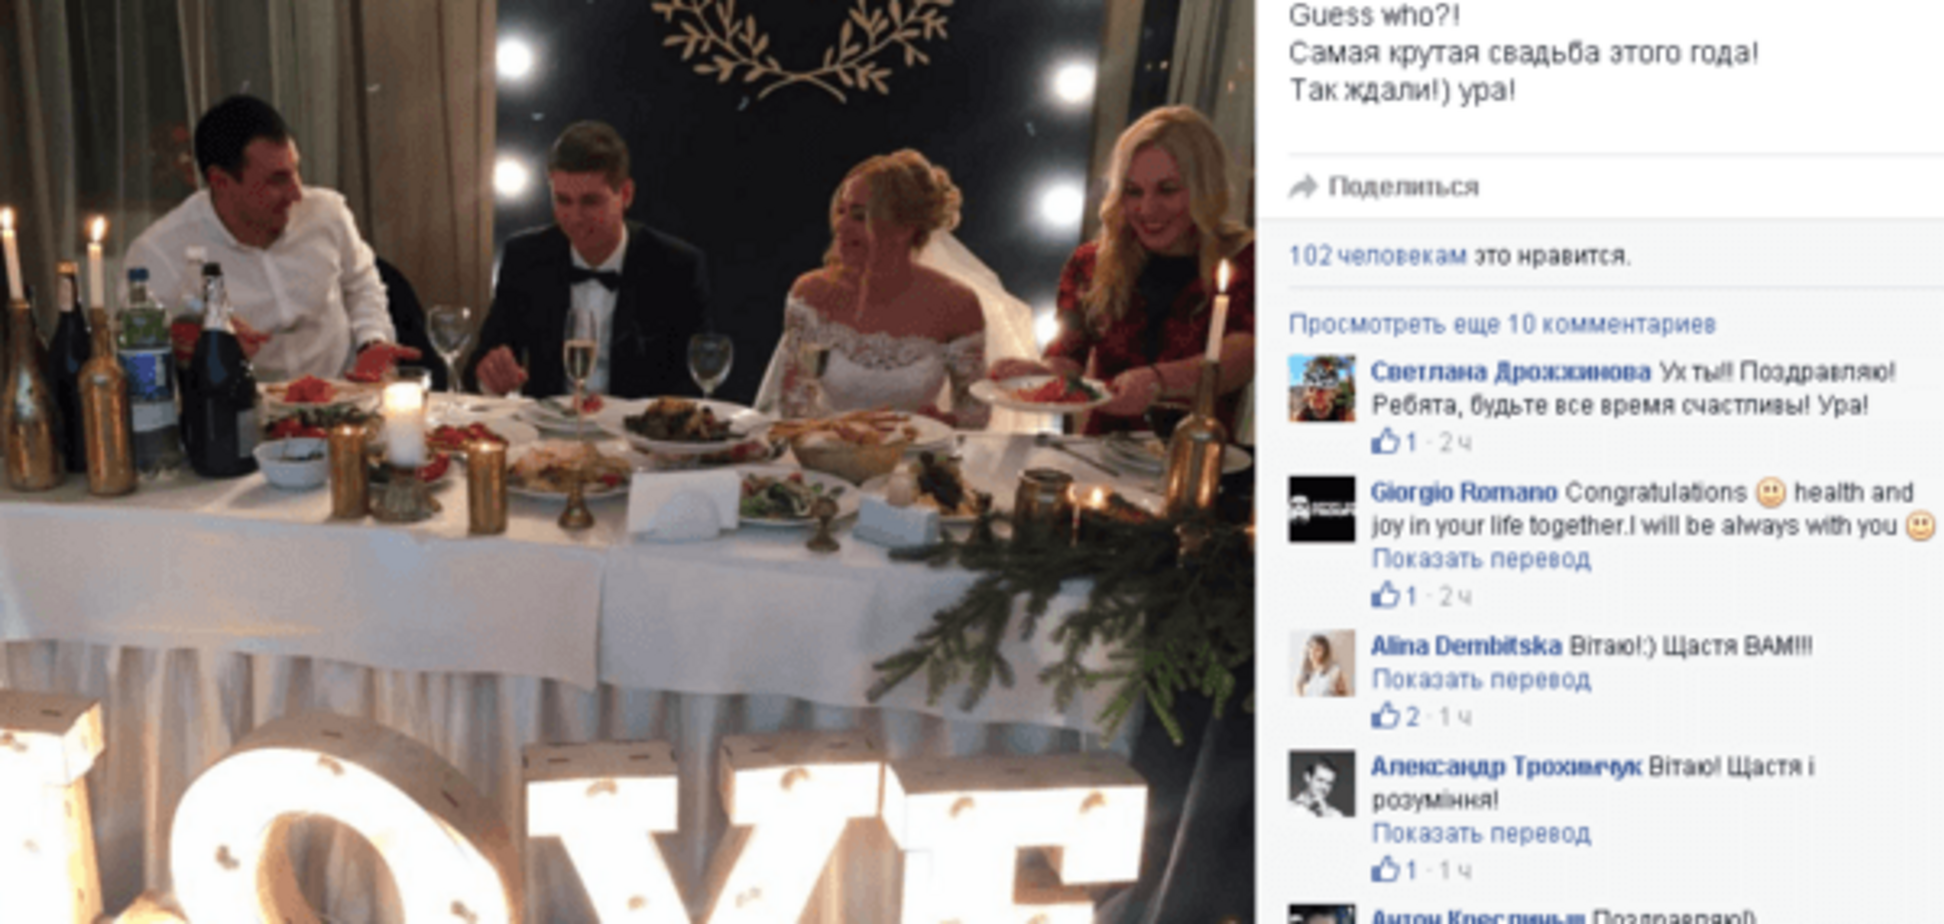 Сильнейшая триатлонистка Украины вышла замуж за известного российского спортсмена: фото со свадьбы